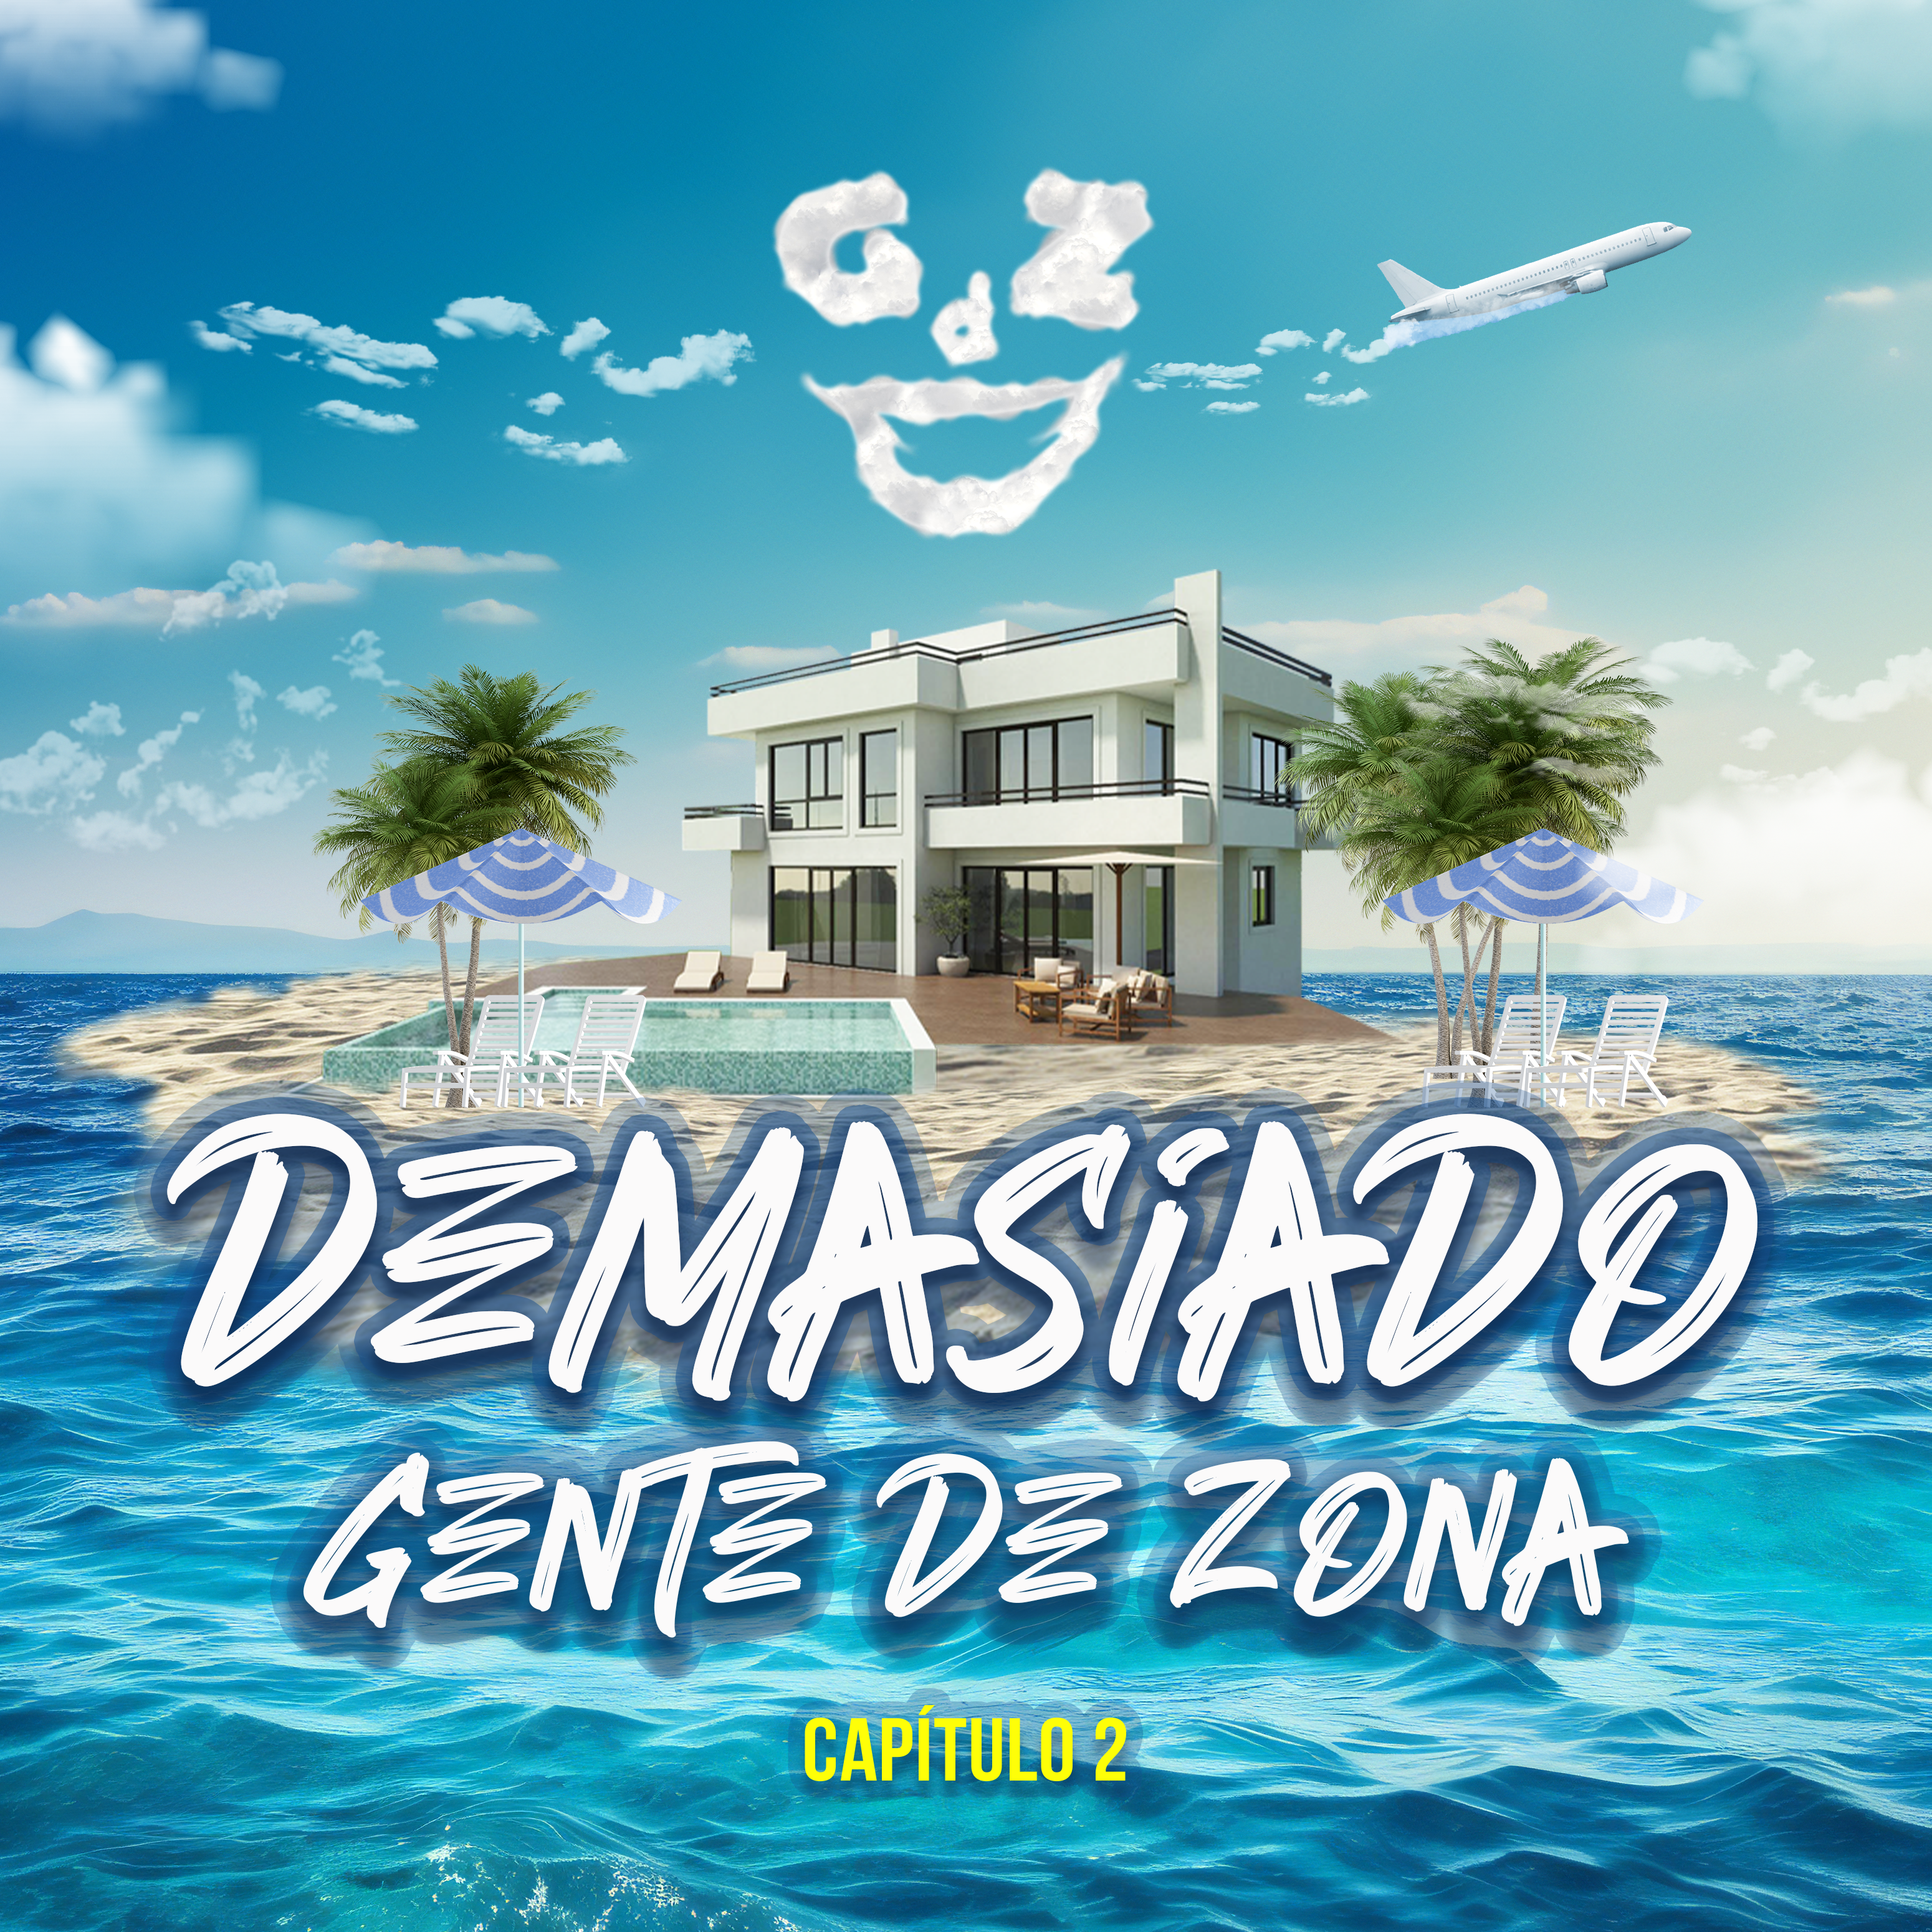 GENTE DE ZONA estrena nuevo sencillo “Demasiado”